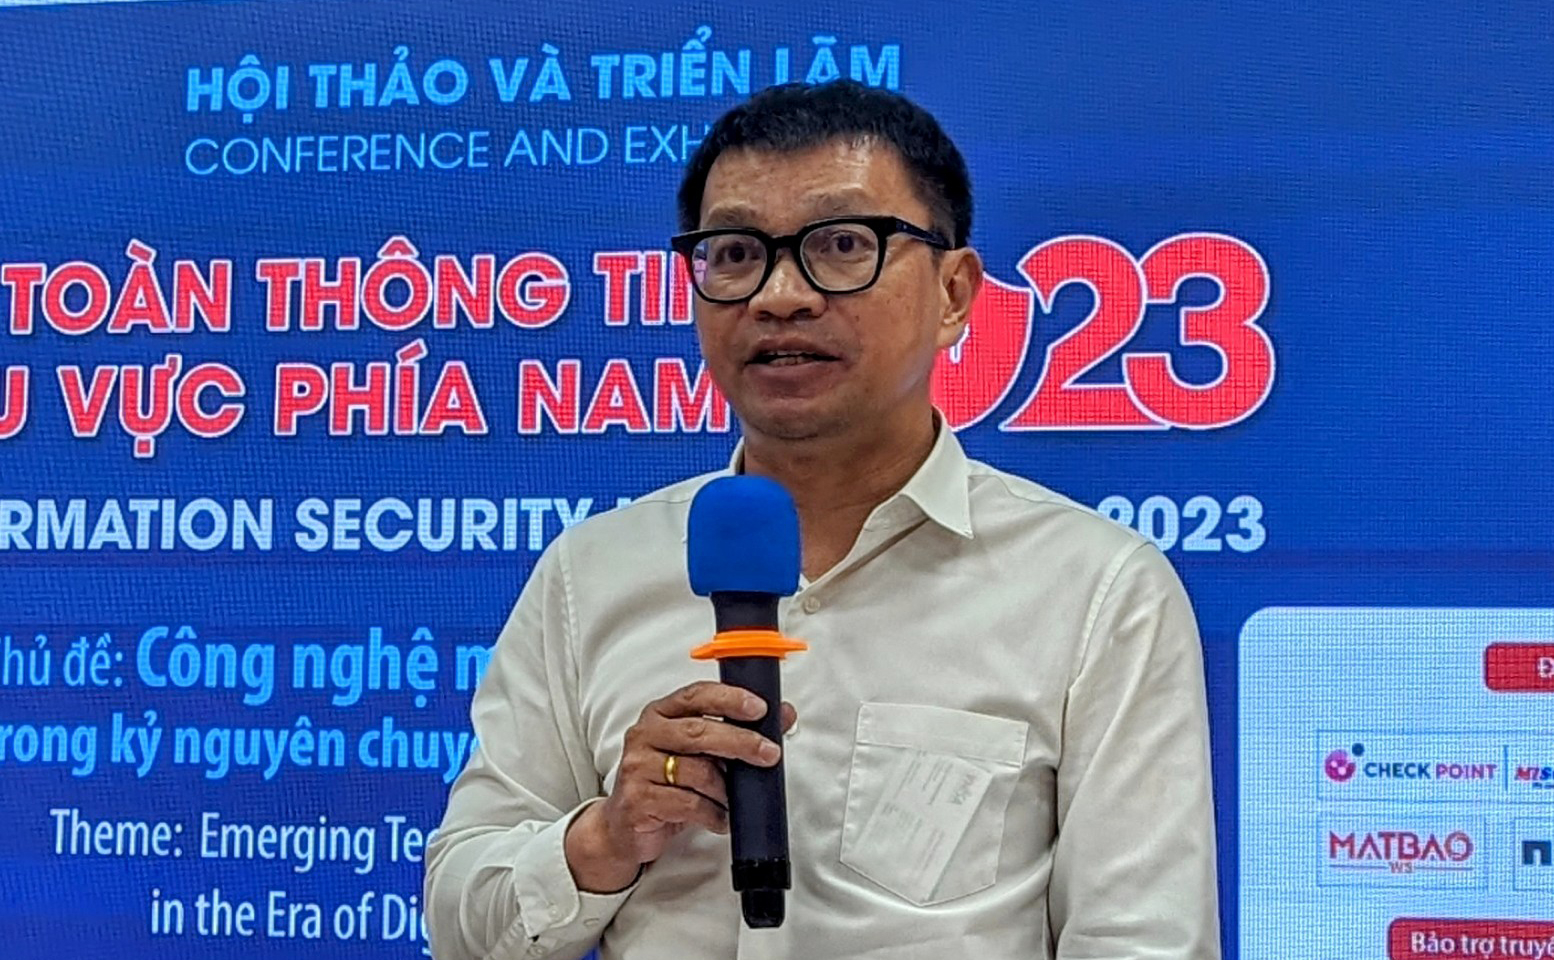 Tiến sĩ Võ Văn Khang – Phó chủ tịch Chi hội An toàn thông tin phía Nam